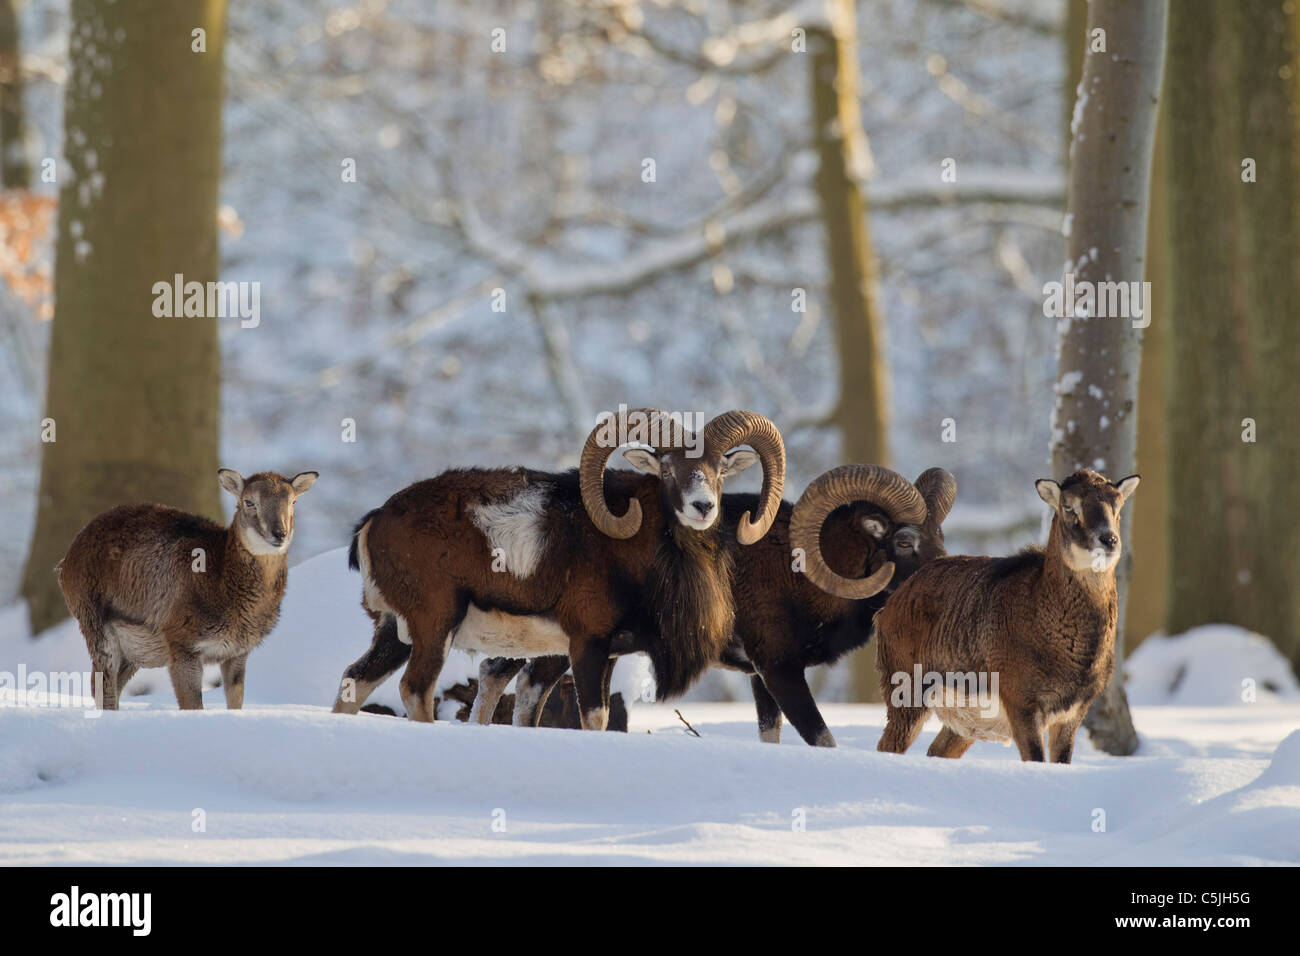 Mouflon (Ovis aries européenne orientalis / Ovis ammon musimon / Ovis gmelini musimon) troupeau en forêt dans la neige en hiver, Allemagne Banque D'Images